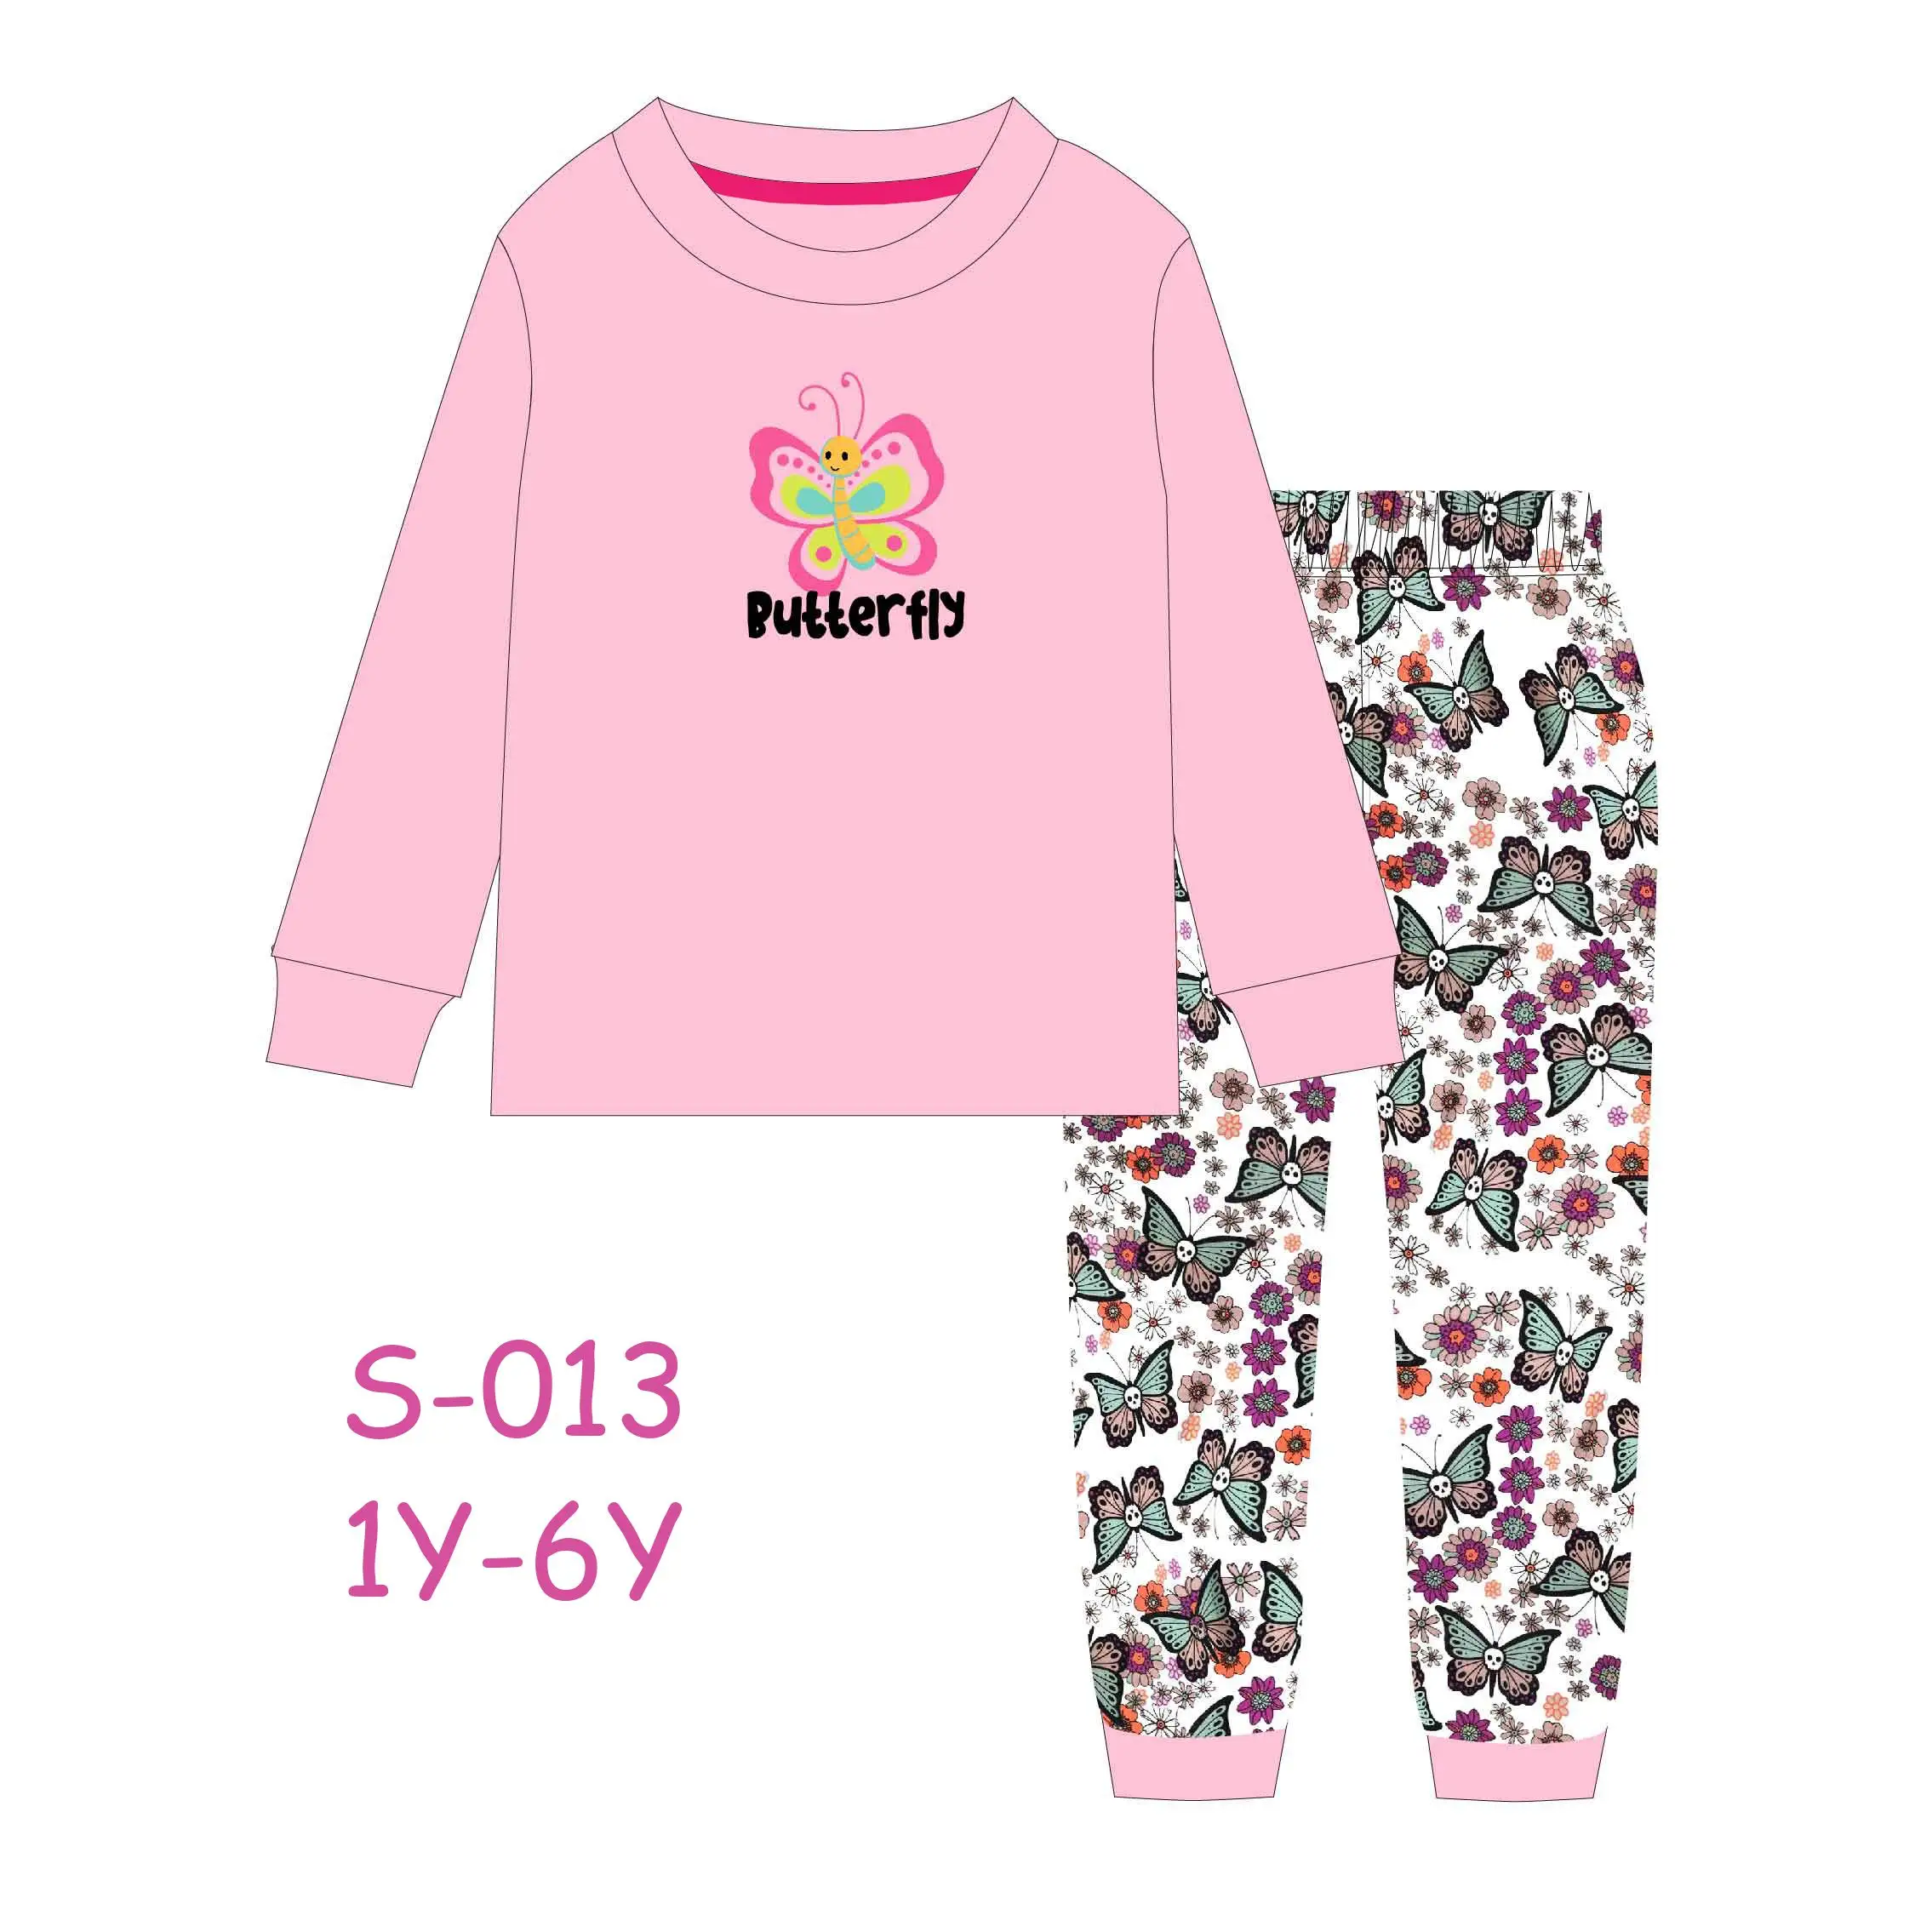 Caluby новые Брендовые брюки с длинными рукавами, детские пижамы с круглым вырезом для девочек, От 1 до 6 лет 100% хлопковые пижамы, оптовая продажа